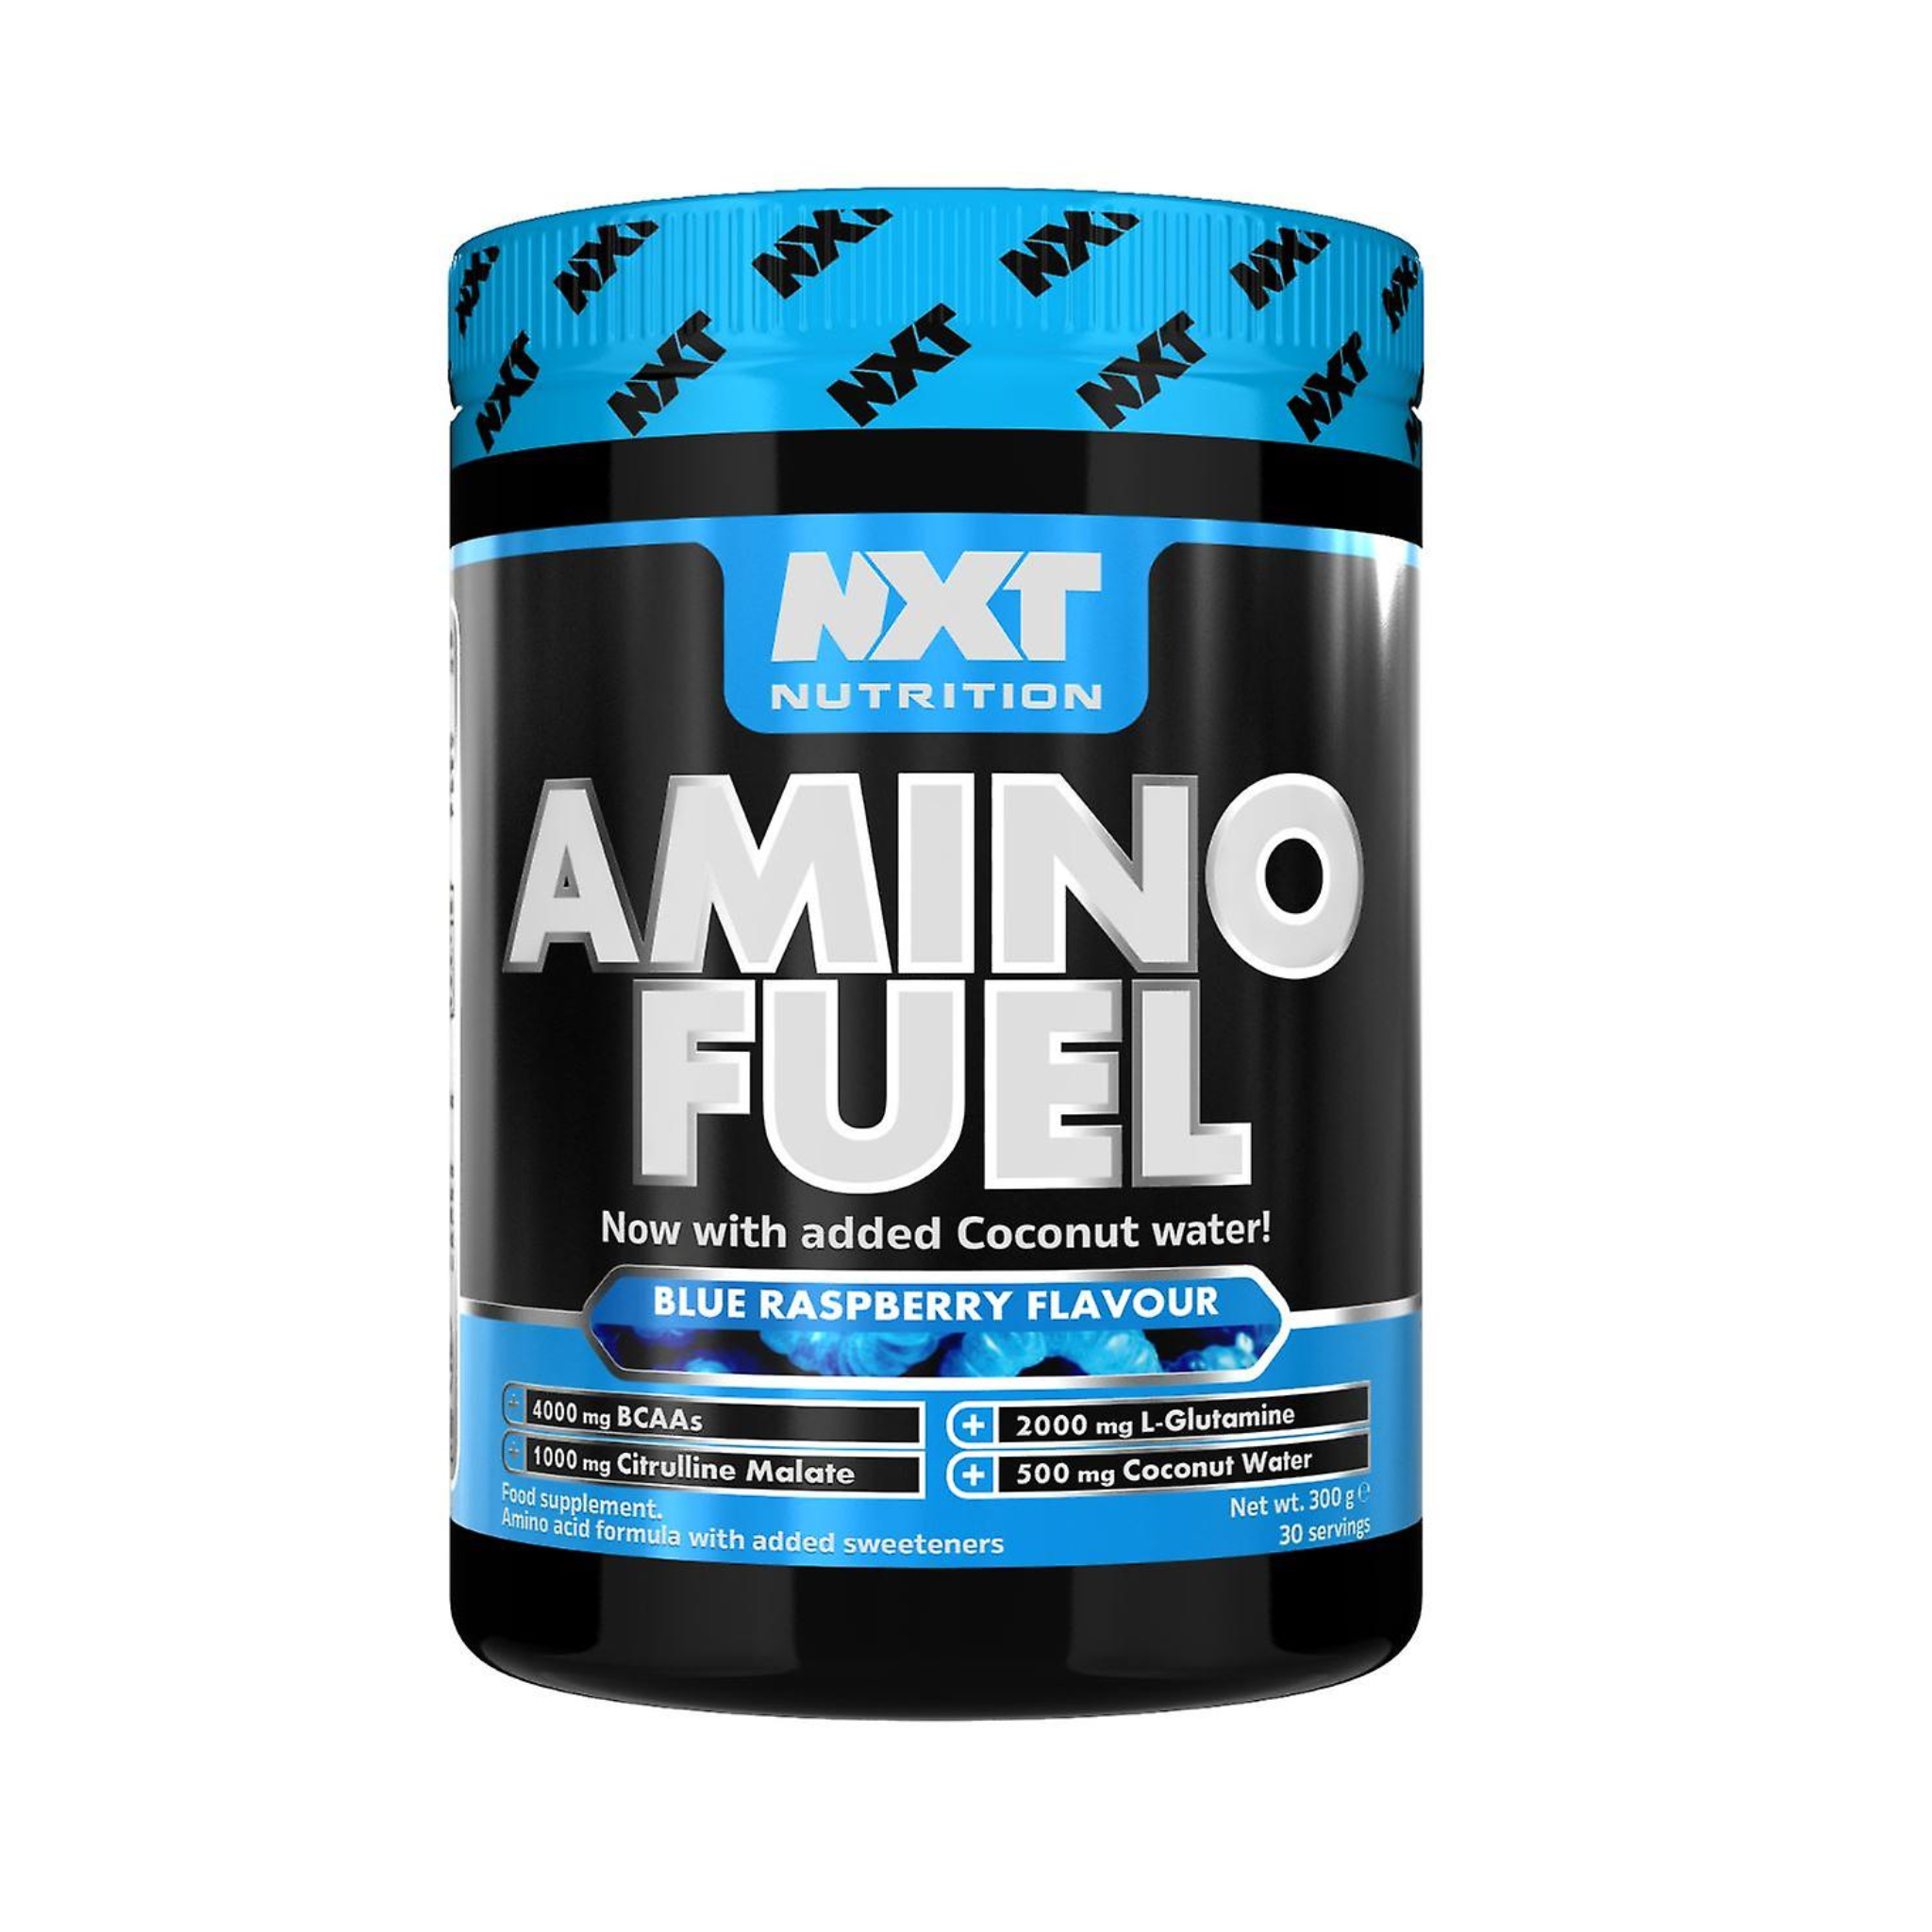 NXT Nutrition Amino Fuel